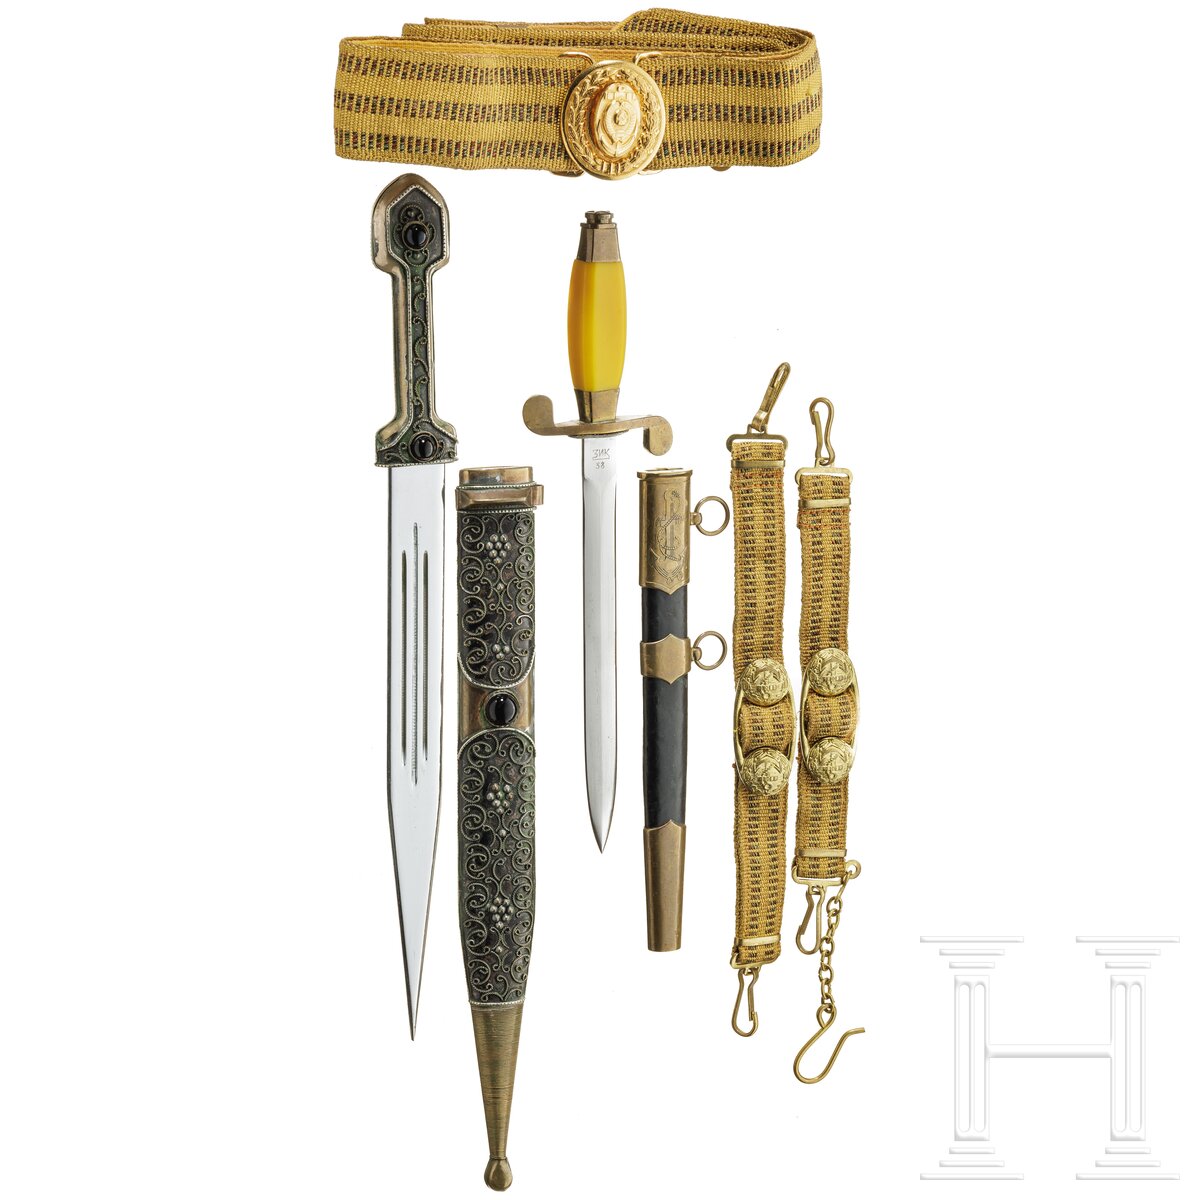 Dolch für Offiziere der Marine, komplett mit Gehänge und Gürtel für Generäle, Sowjetunion, datiert 1